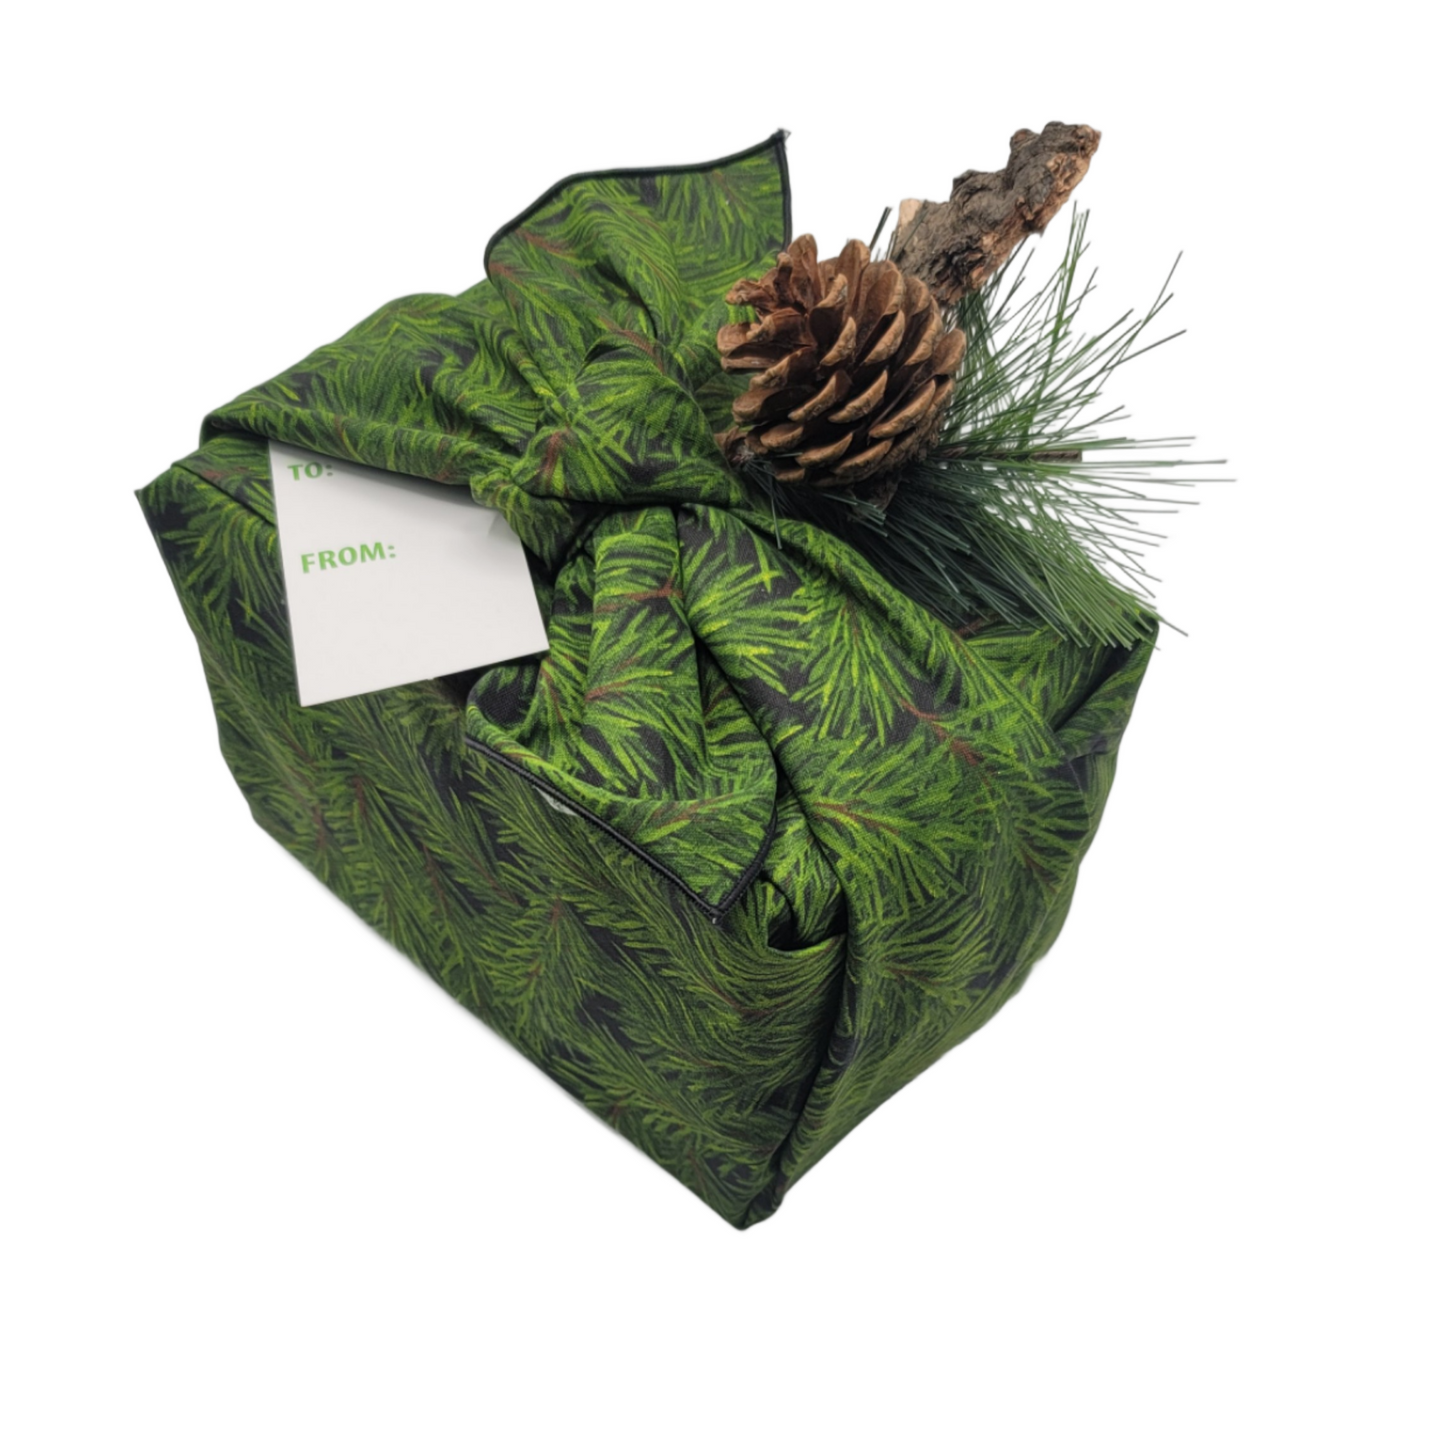 Furoshiki 3 pc Fabric Gift Wrap Kit - Holiday/Photoreal Christmas Tree